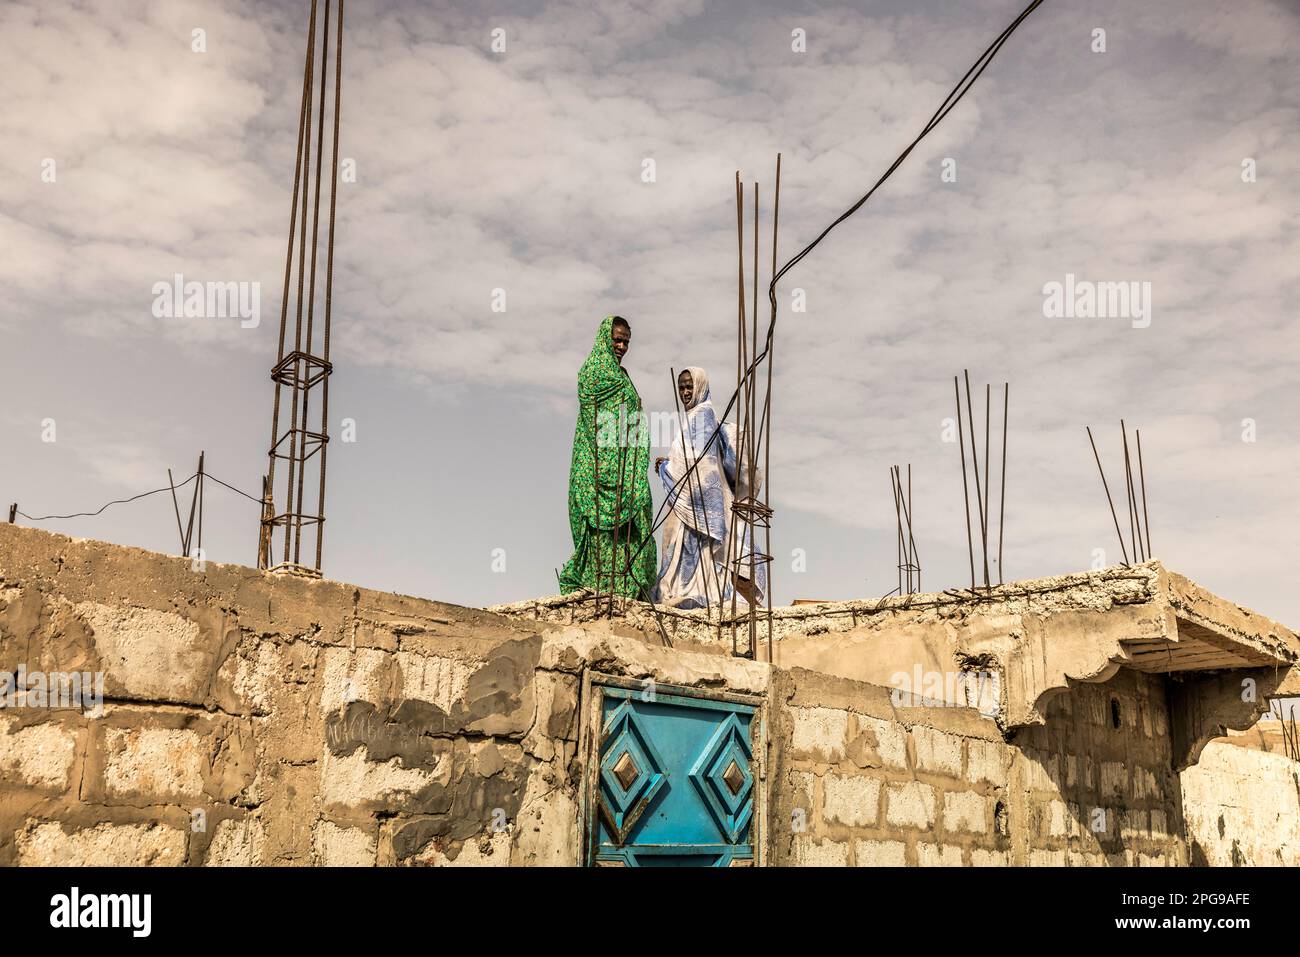 Les gens de tous les jours, traditionnels et simples, vivent dans les quartiers les plus pauvres de la capitale, Nouakshott, en Mauritanie. Banque D'Images